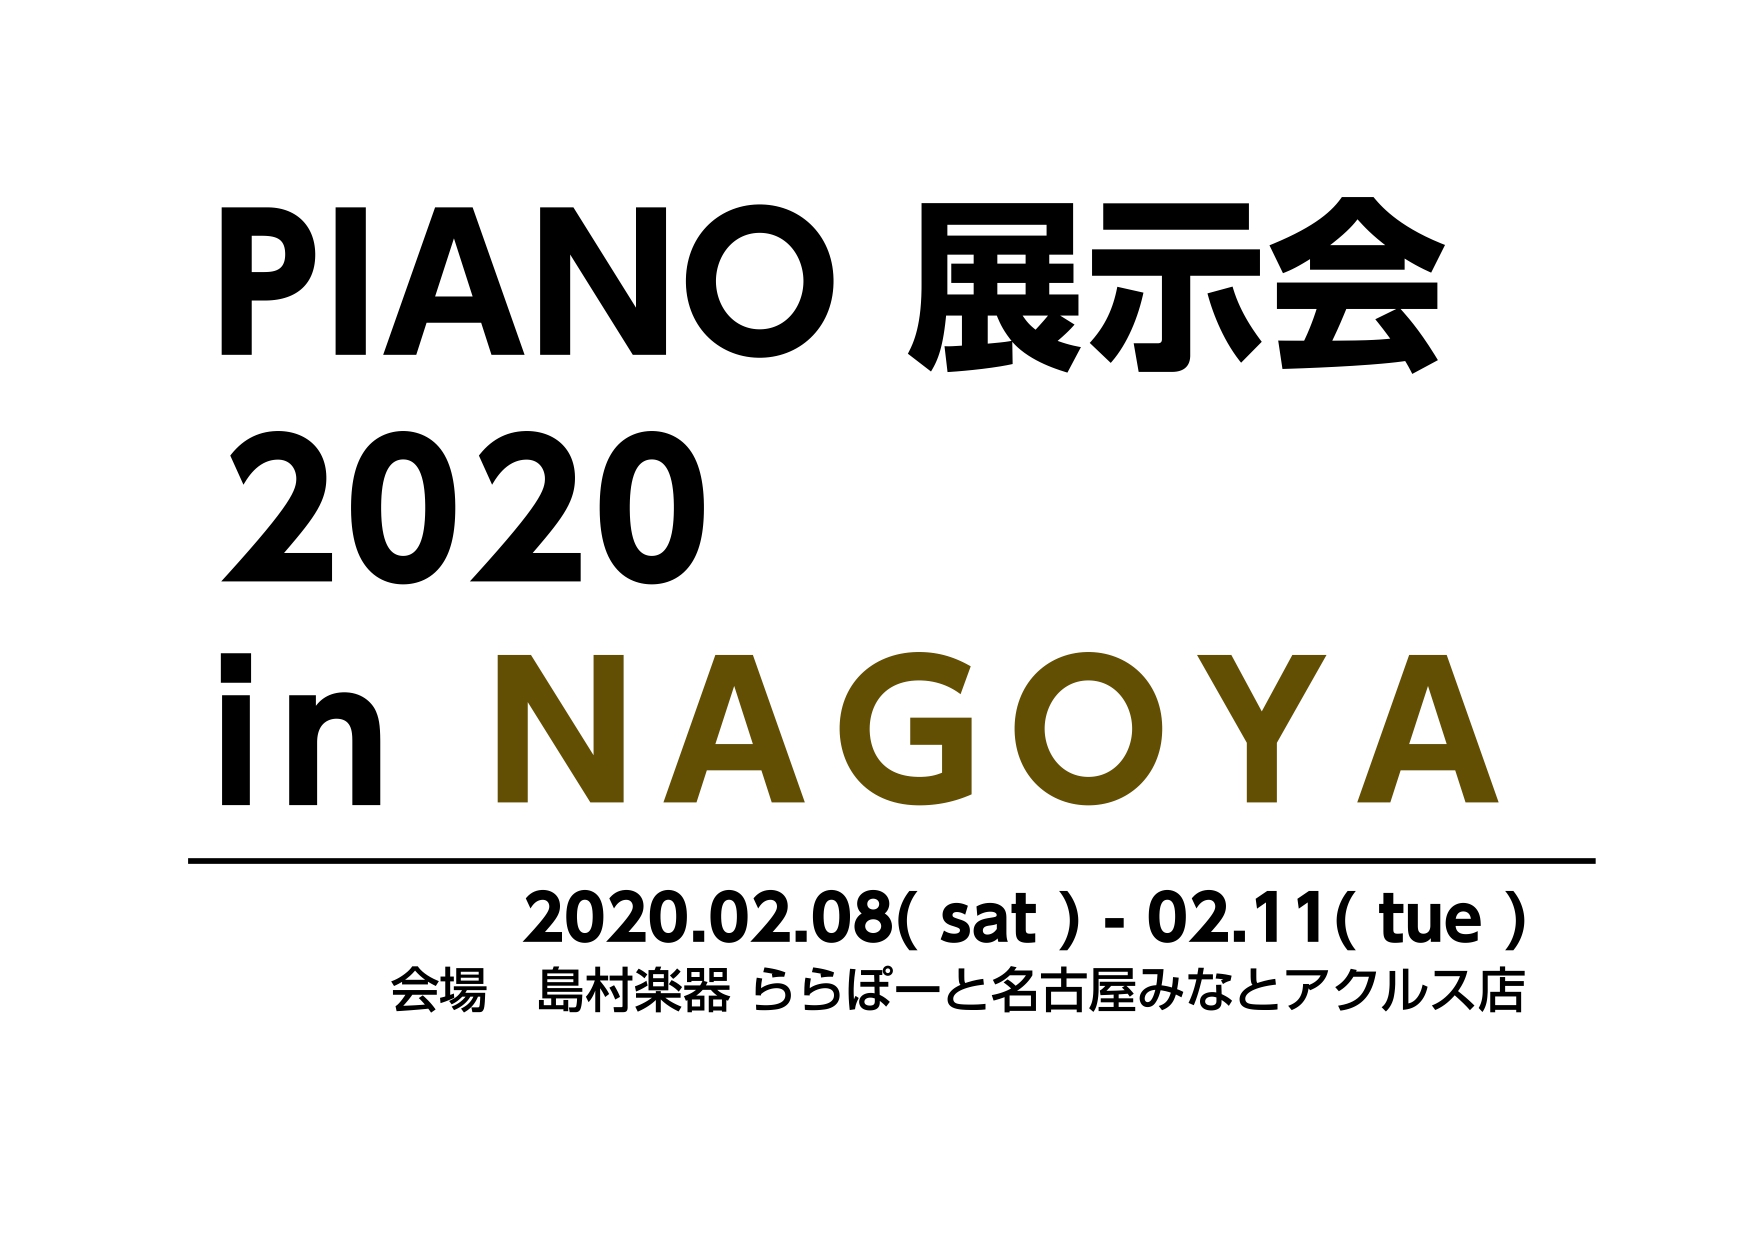 【4/25-4/29 ピアノフェスタ開催のお知らせ】～総台数80台超えの東海地区最大のピアノ大展示会～